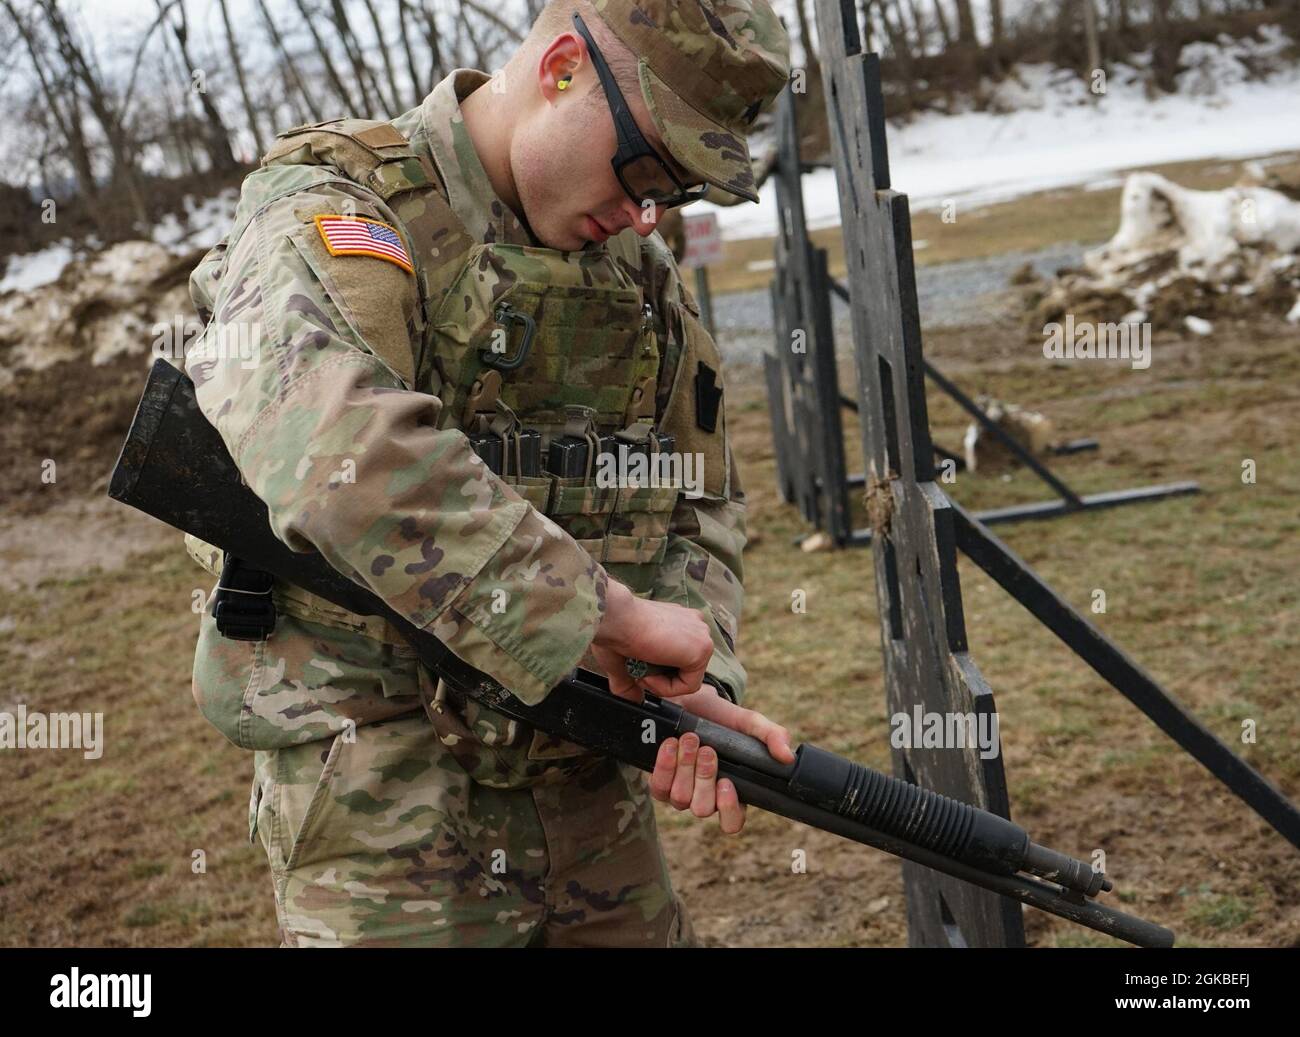 SGT. Alexander Heber, soldato della 56a squadra di combattimento Stryker Brigade, 28° divisione fanteria, carica un guscio di fucile da caccia da 12 gauge nel fucile M500 durante le qualifiche del fucile da caccia M500, parte del Concorso migliore guerriero della Guardia Nazionale della Pennsylvania il 4 marzo 2021, presso Fort Indiantown Gap, La parte di gamma della competizione consisteva in qualifiche con la carabina M4, la pistola M17 e il fucile M500. Foto Stock